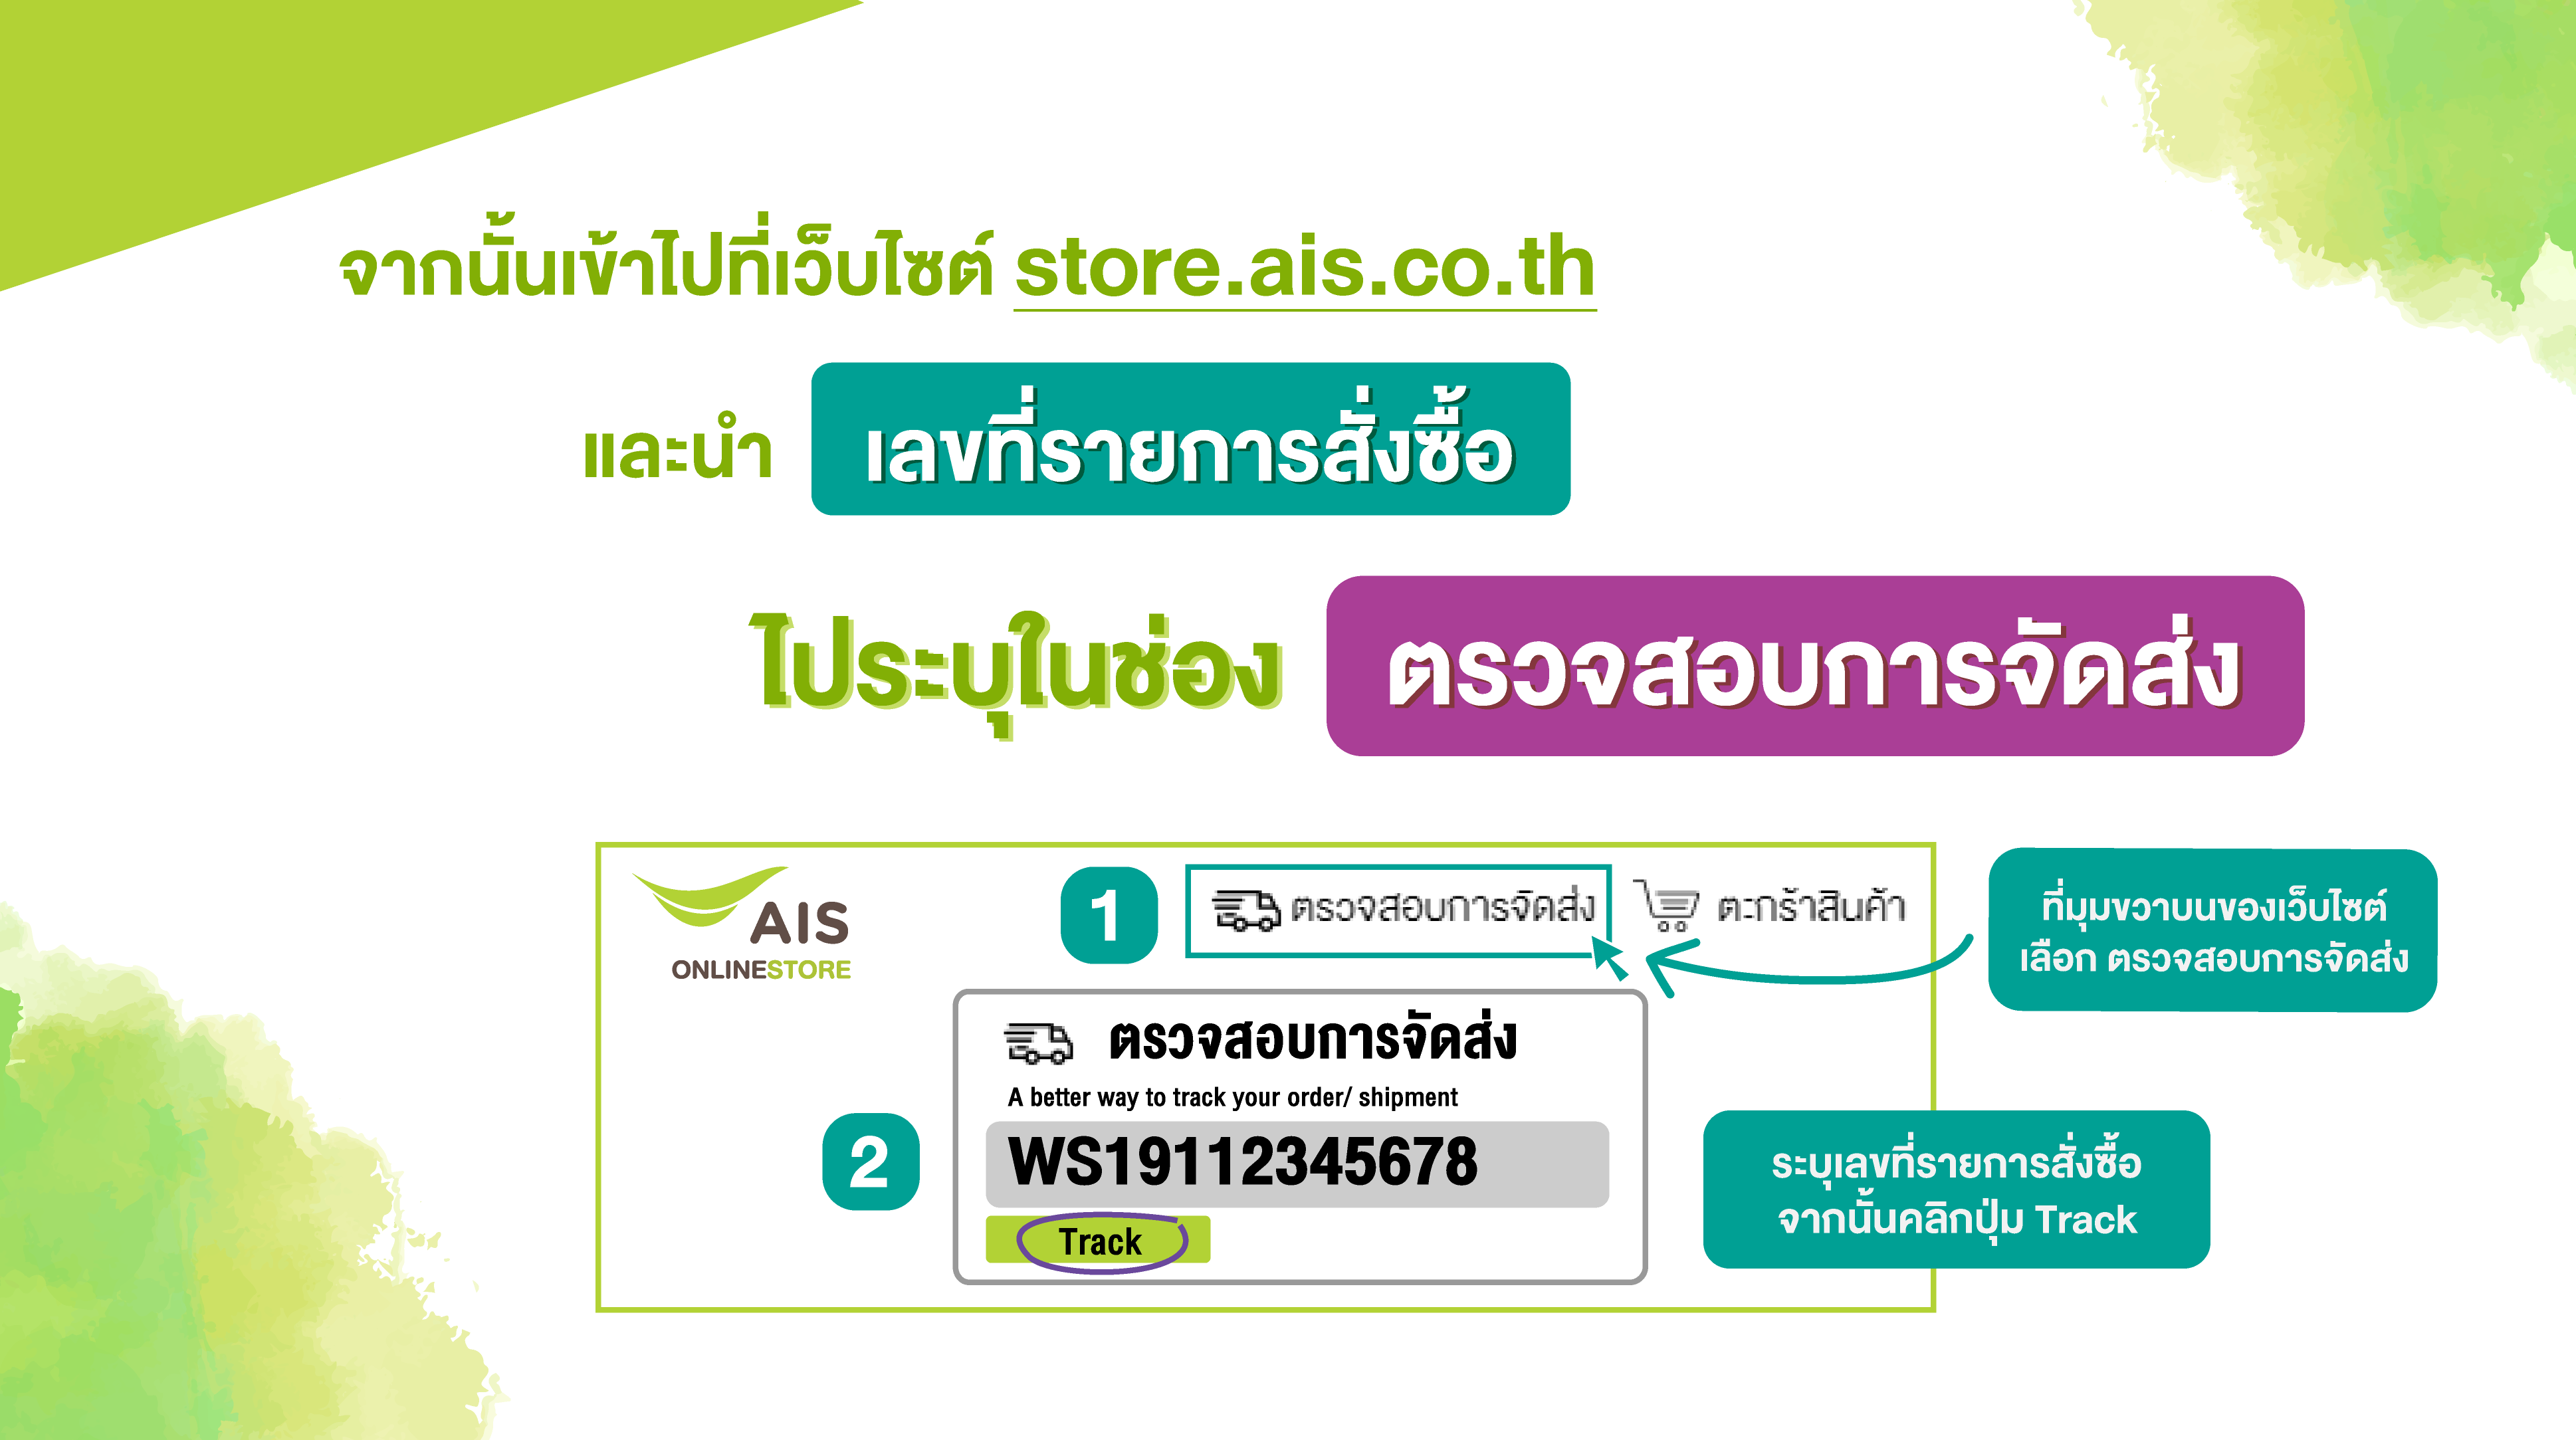 วิธีตรวจสอบสถานะคำสั่งซื้อผ่าน Ais Online Store